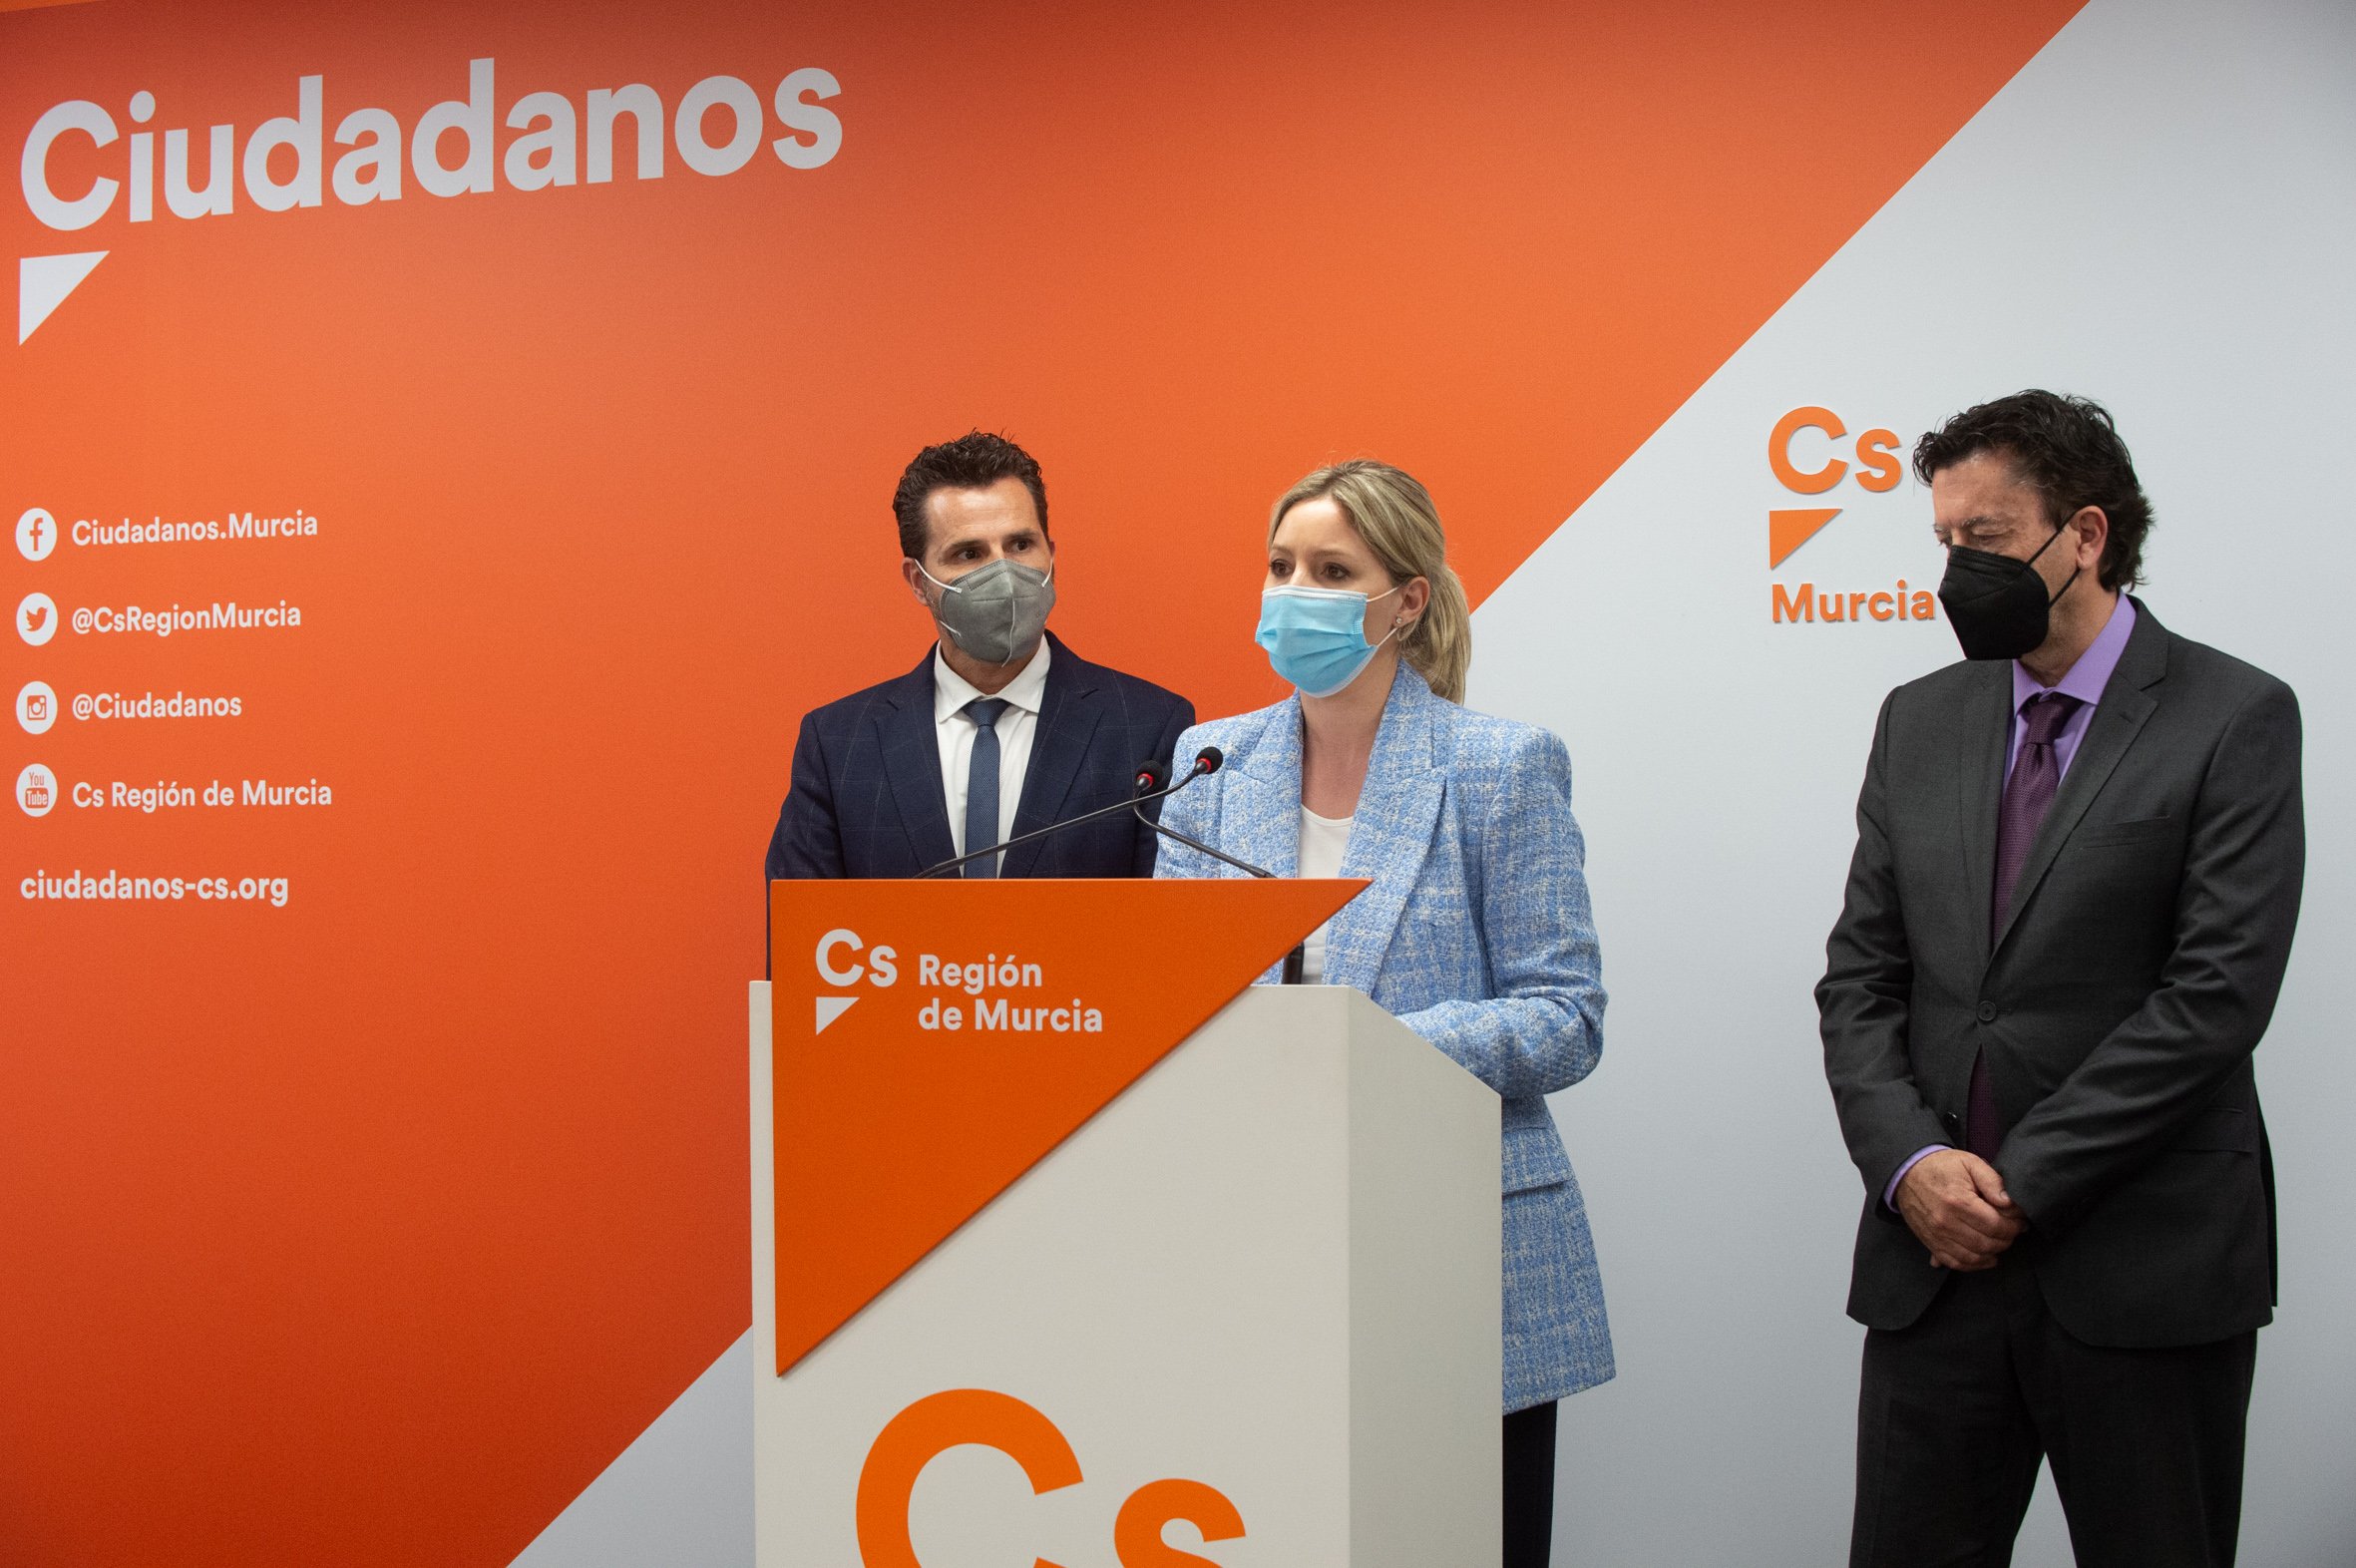 Ciudadanos expulsa a tres diputados disidentes en Murcia y mantiene la moción